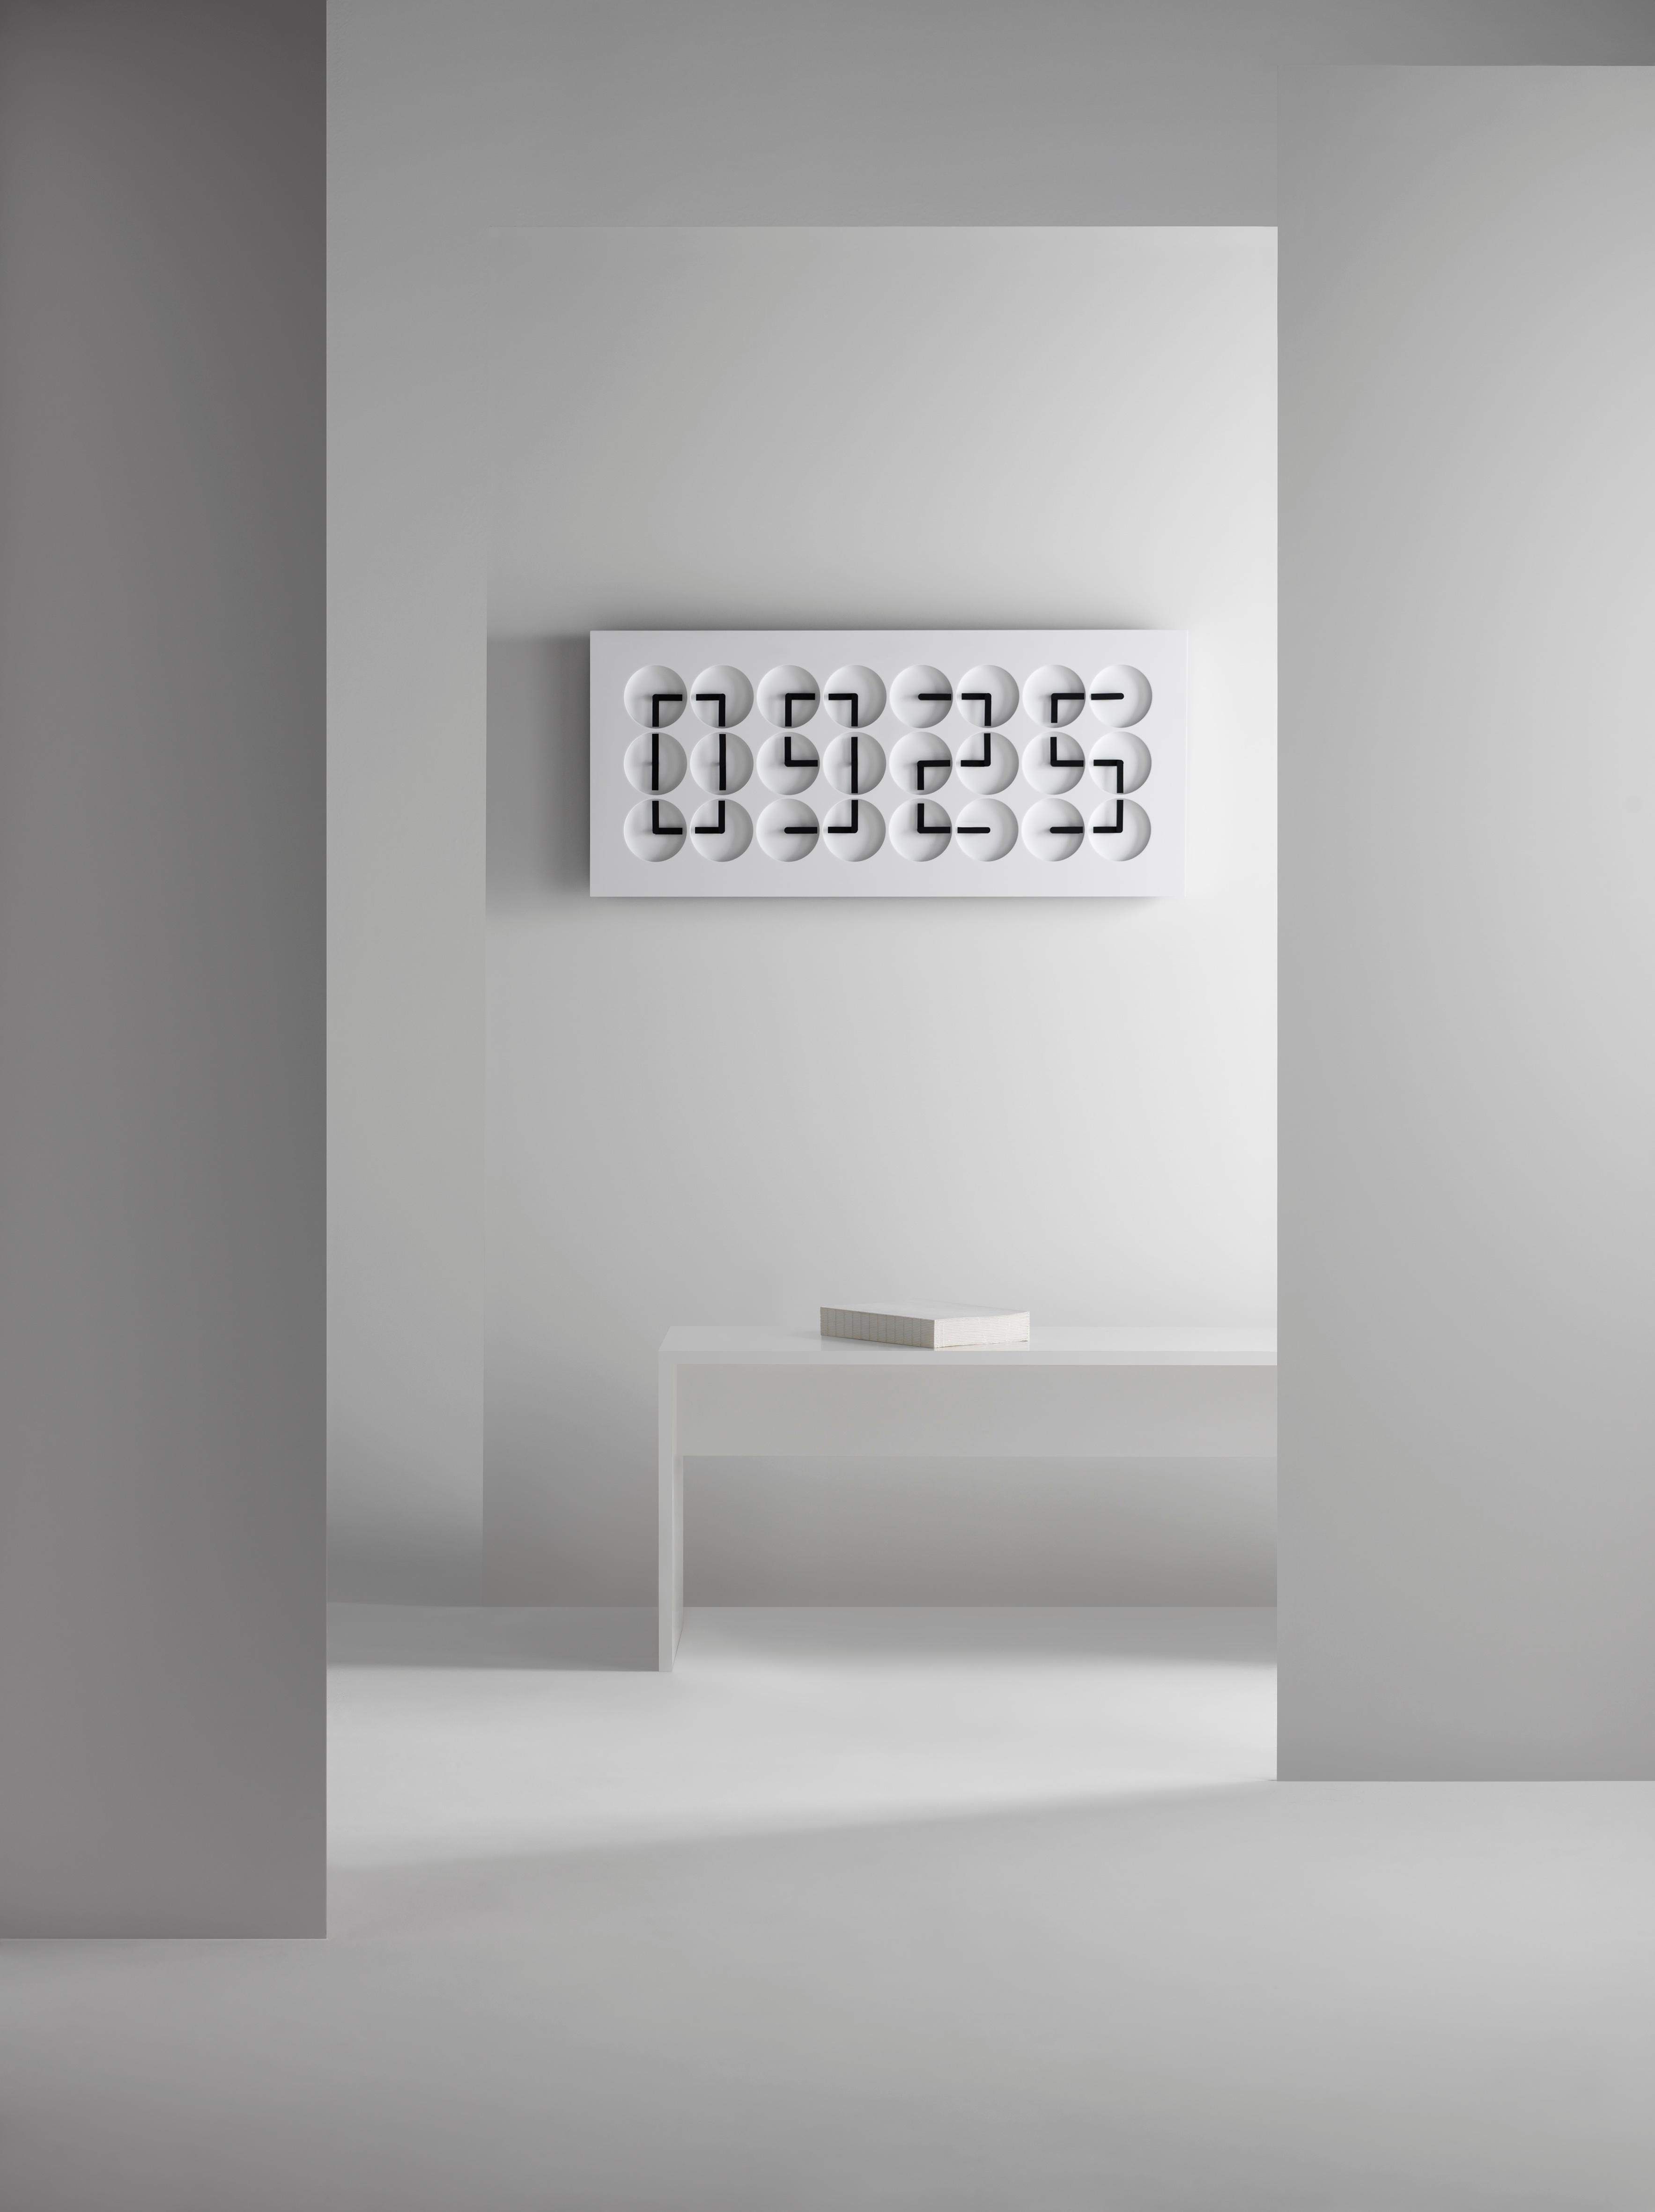 ClockClock 24 ist sowohl eine kinetische Skulptur als auch eine funktionierende Wanduhr. Seit seiner Einführung im Jahr 2016 ist er seit 1982 ein Markenzeichen von Humans. Die einzelnen Uhrzeiger schwanken zwischen unvorhersehbarem, mechanischem